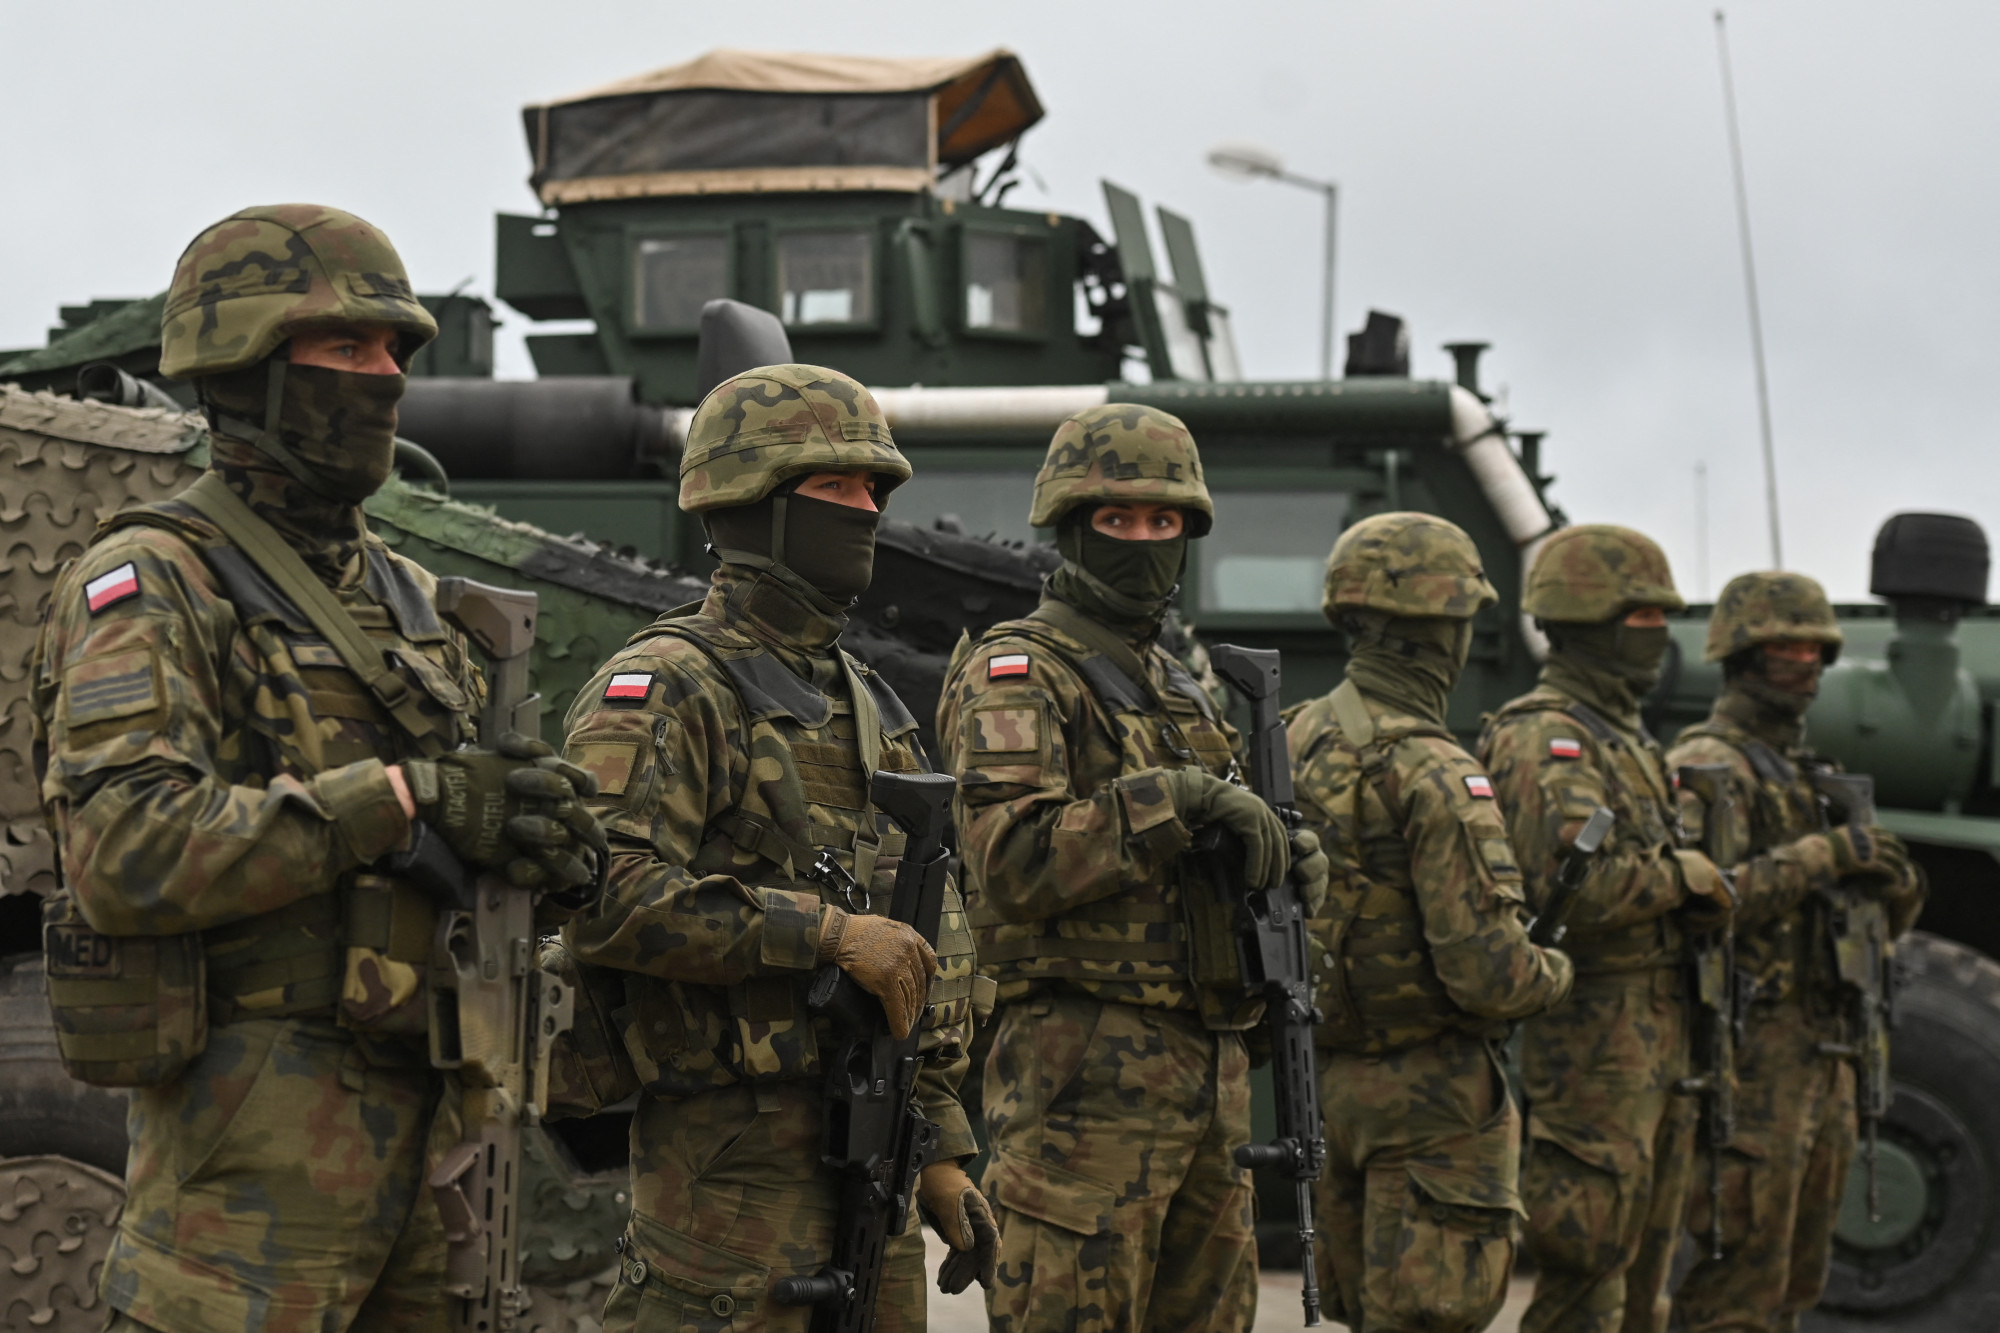 Lengyelország és Csehország százmilliókat kapott az Egyesült Államoktól hadseregfejlesztésre